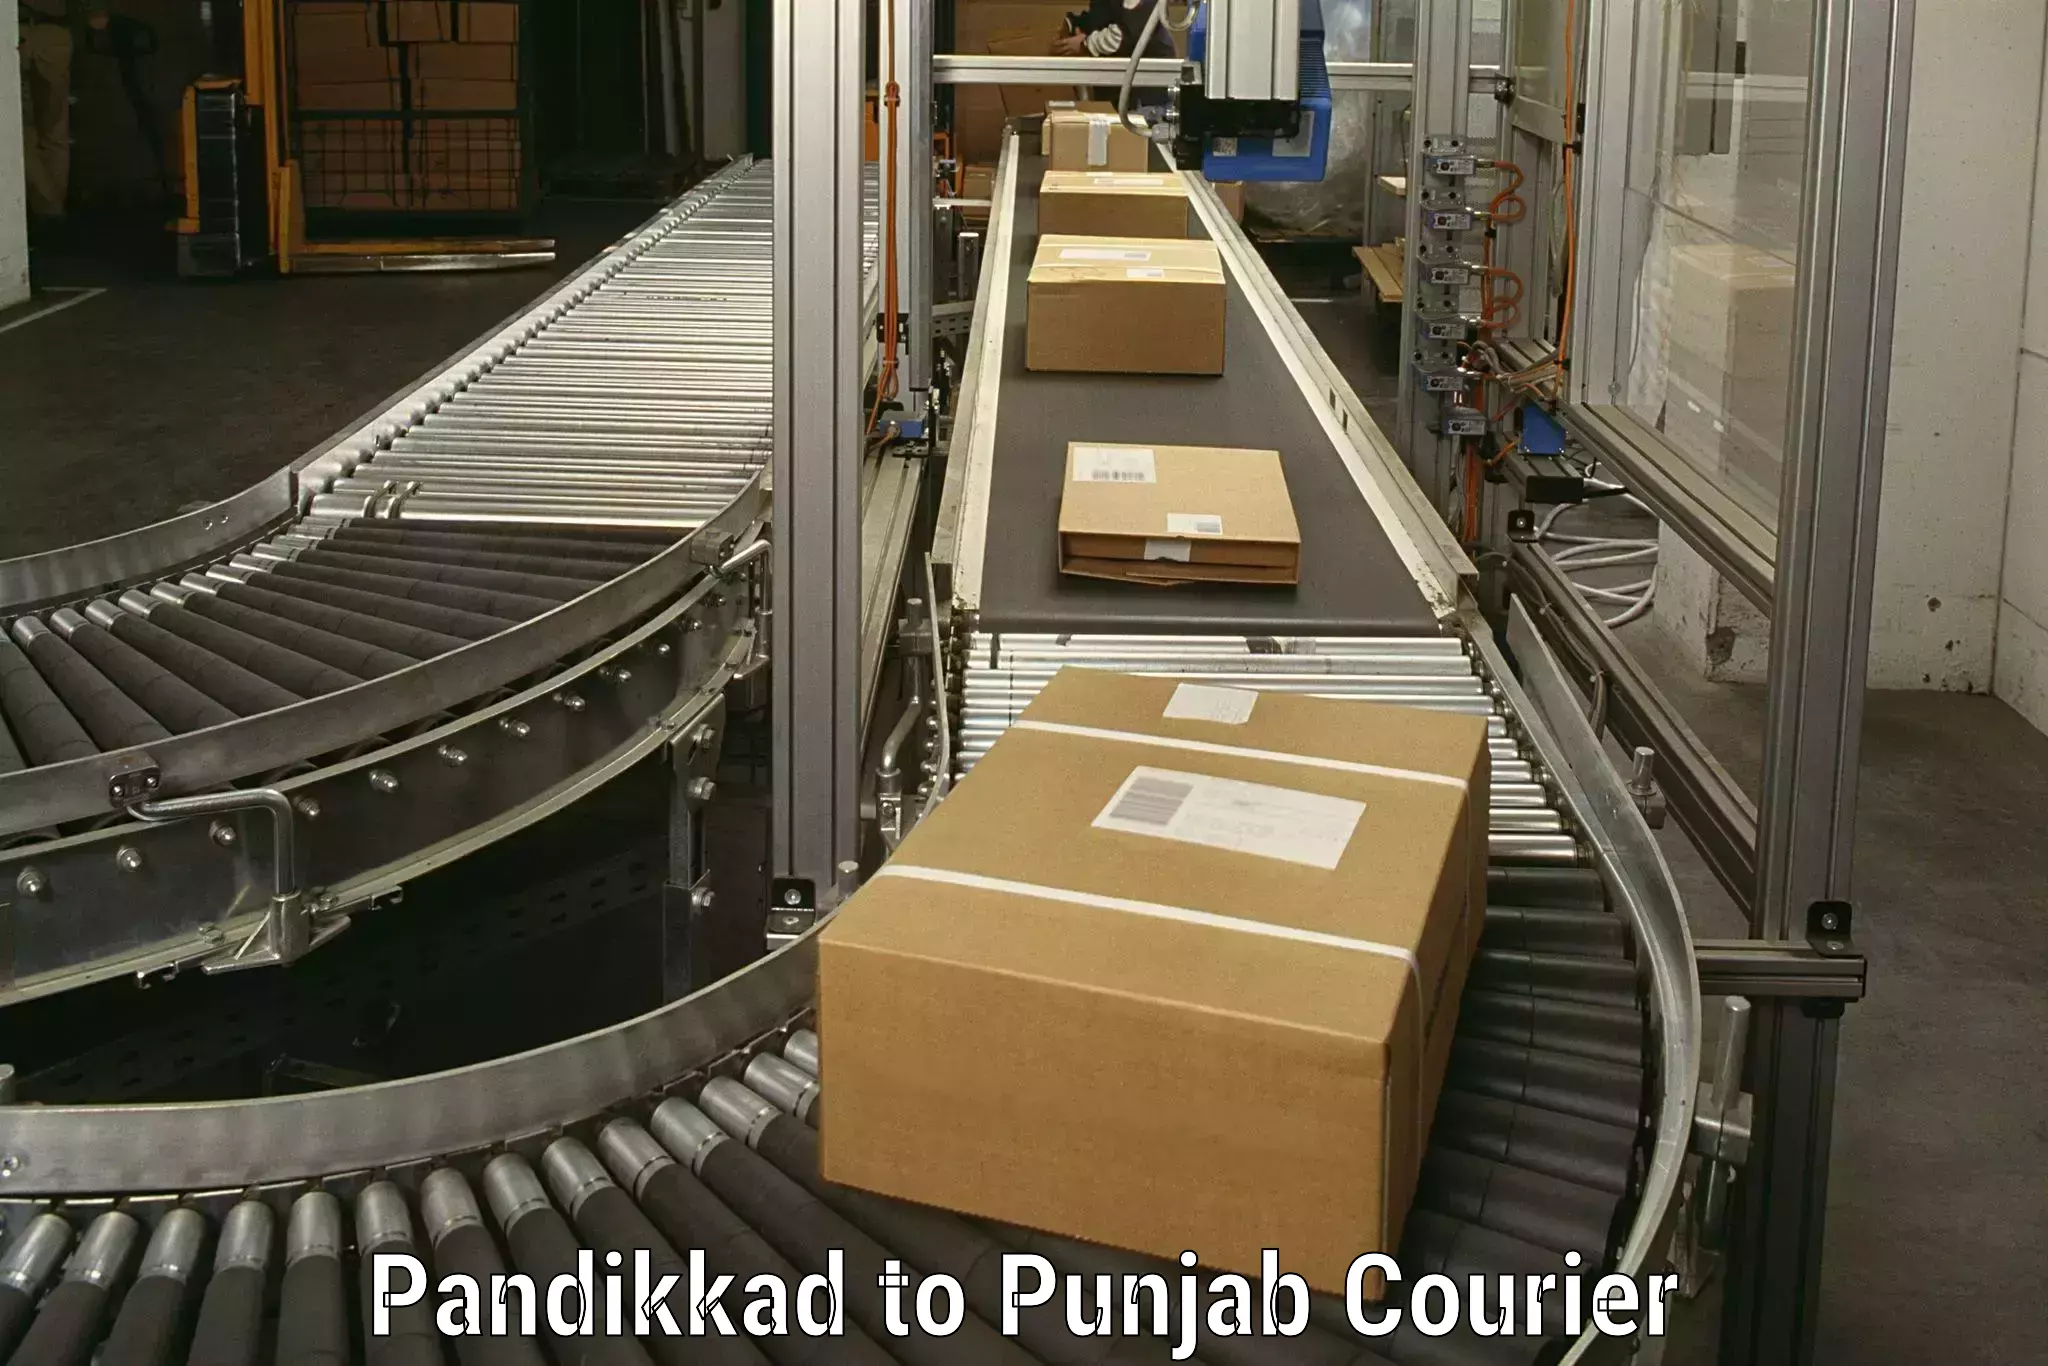 Moving and storage services Pandikkad to Anandpur Sahib